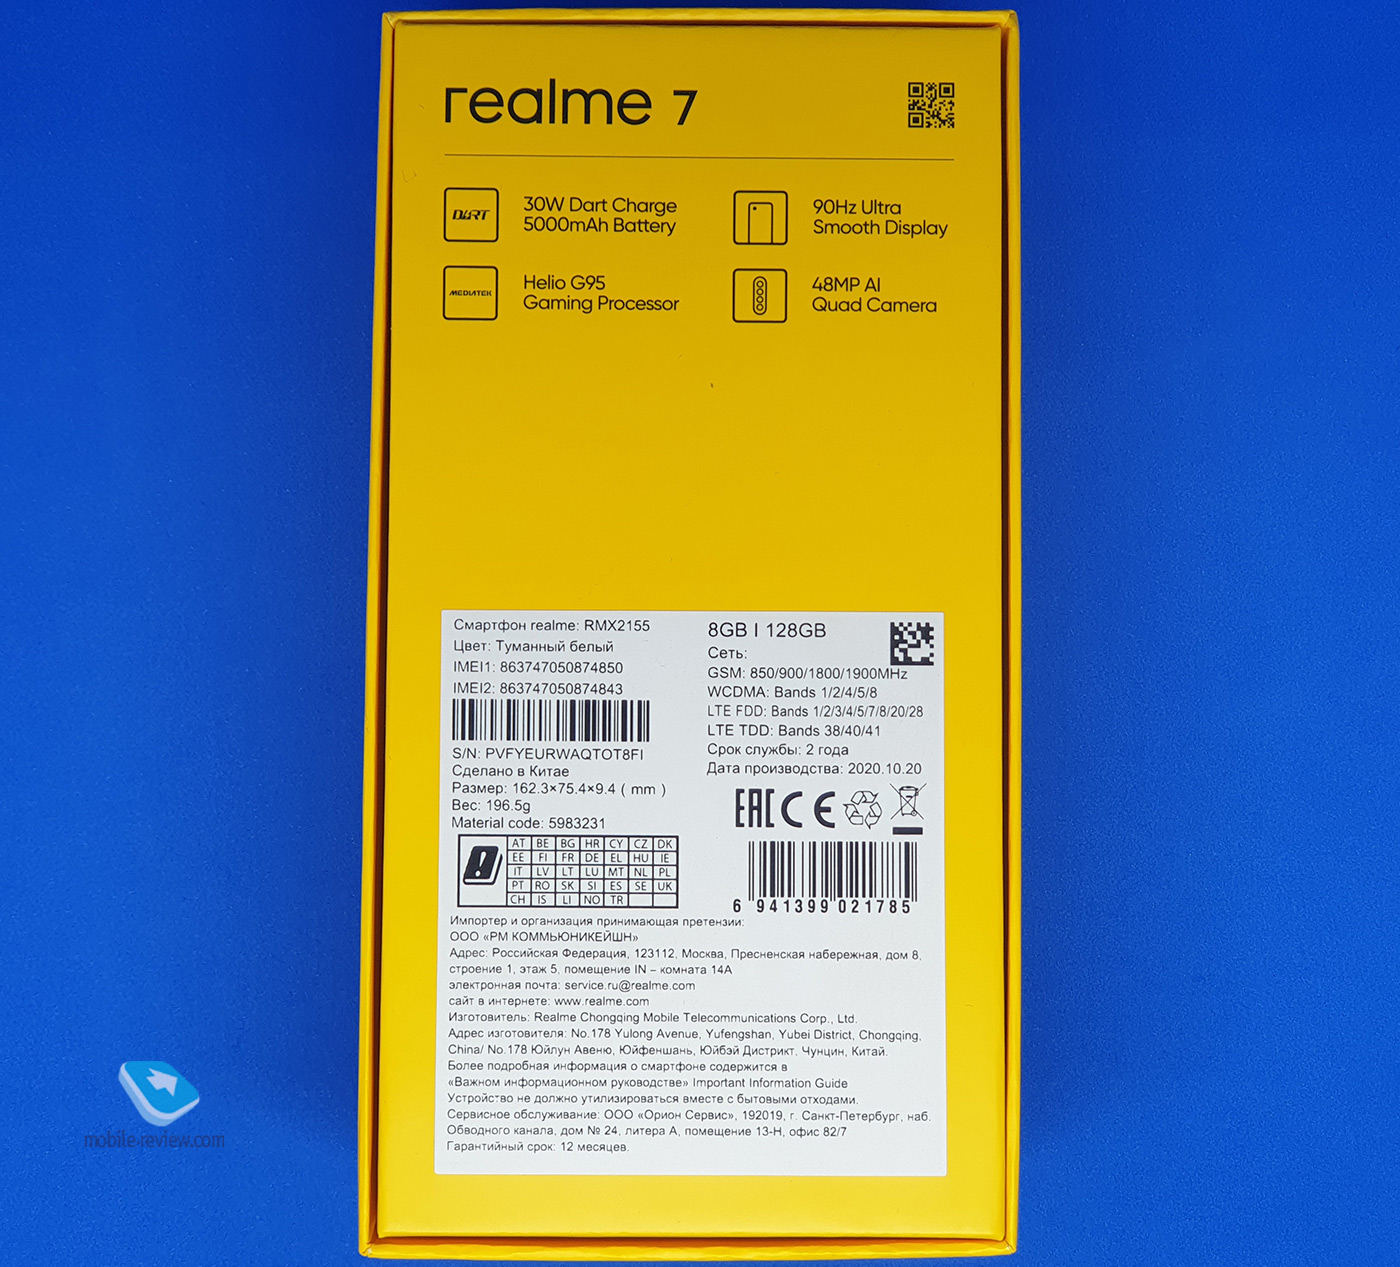 Smartphone review realme 7 (RMX2155)